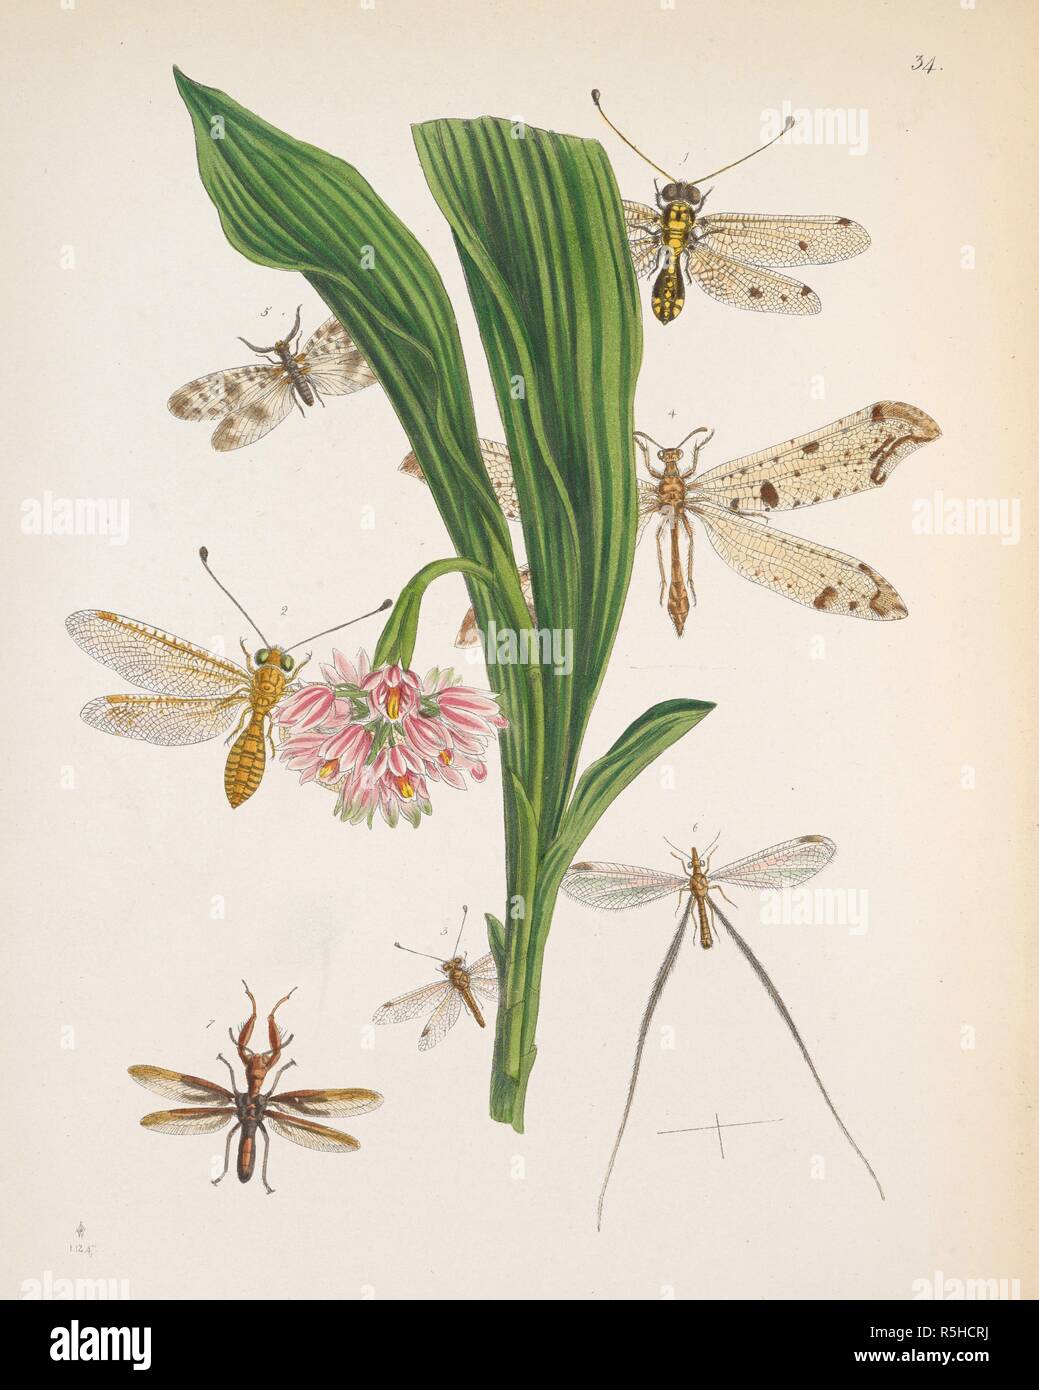 Net-insectes ailés, inclut les chrysopes, mantidflies, antlions, et leurs proches. (Article - NEUROPTÈRES. L'article â€" SuBNEcr oMORrnoTicA.. Sous-section â€" Planipennes. La figure 1. ASCALAPHUS (OGCOGASTER) TESSELLATUS. La figure 2. ASCALAPHUS (OGCOGASTER SEGMENTATOR). La figure 3. (BUBO ASCALAPHUS CANIFRONS). La figure 4. MYRMELEON SINGULARE. La figure 5. CHAULIODES SUBFASCIATUS. La figure 6. FILIPENNIS NEMOPTERA. La figure 7. MANTISPA NODOSA. . Le Cabinet d'entomologie, l'Oriental est une sélection de certaines des plus belles et plus rares espèces d'insectes, les autochtones de l'Inde et les îles adjacentes. Lon Banque D'Images